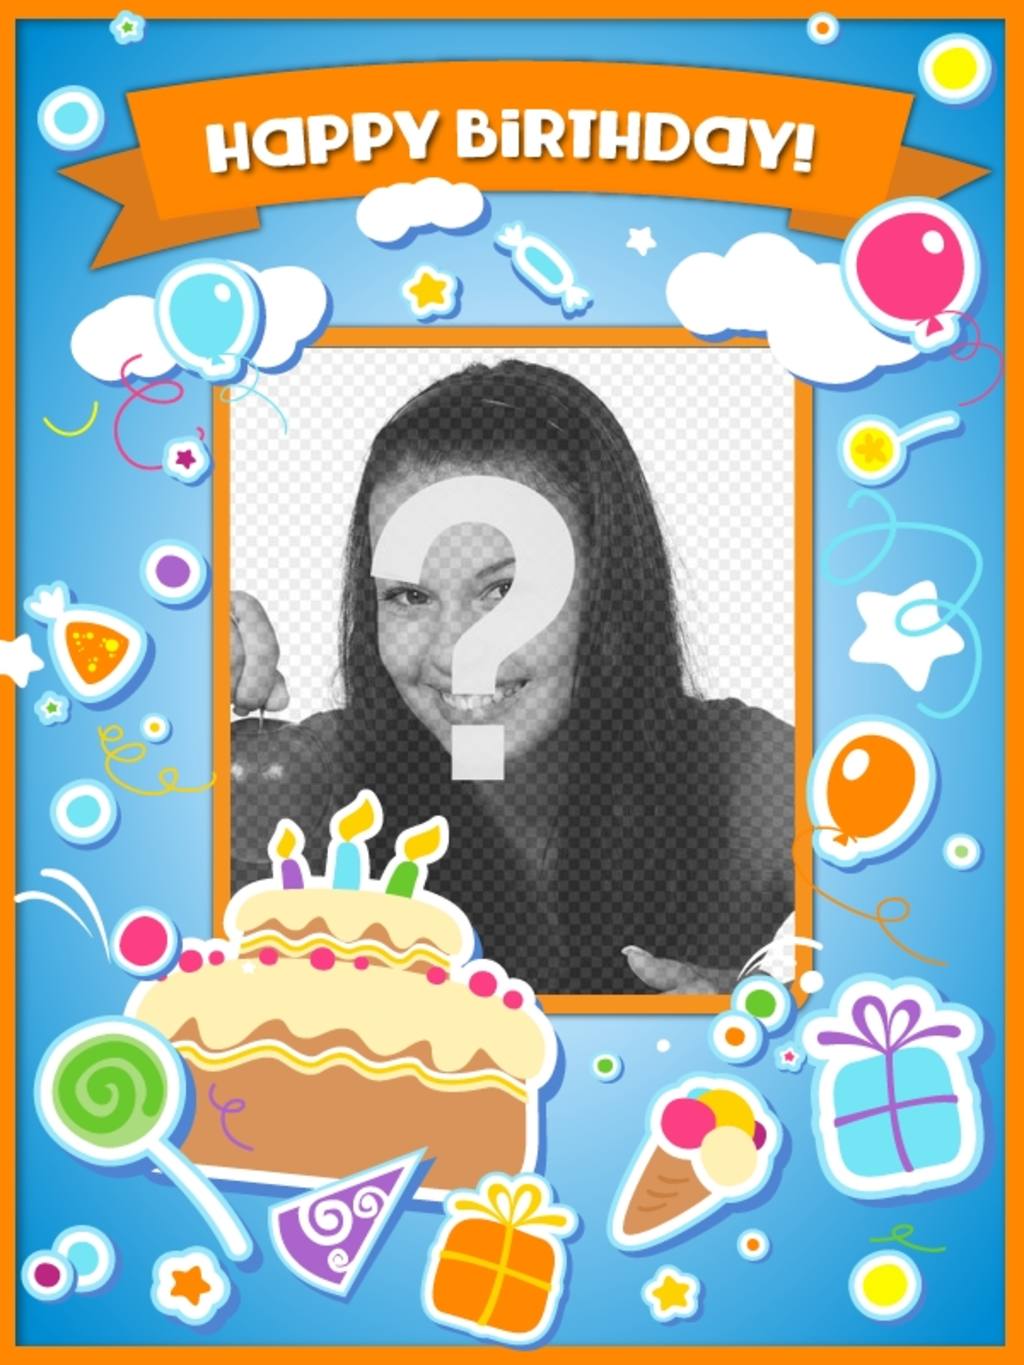 Geburtstagskarte, um den Geburtstag zu gratulieren und legte ein Bild online mit einem Kuchen, Luftballons und Geschenke mit Aufkleber..